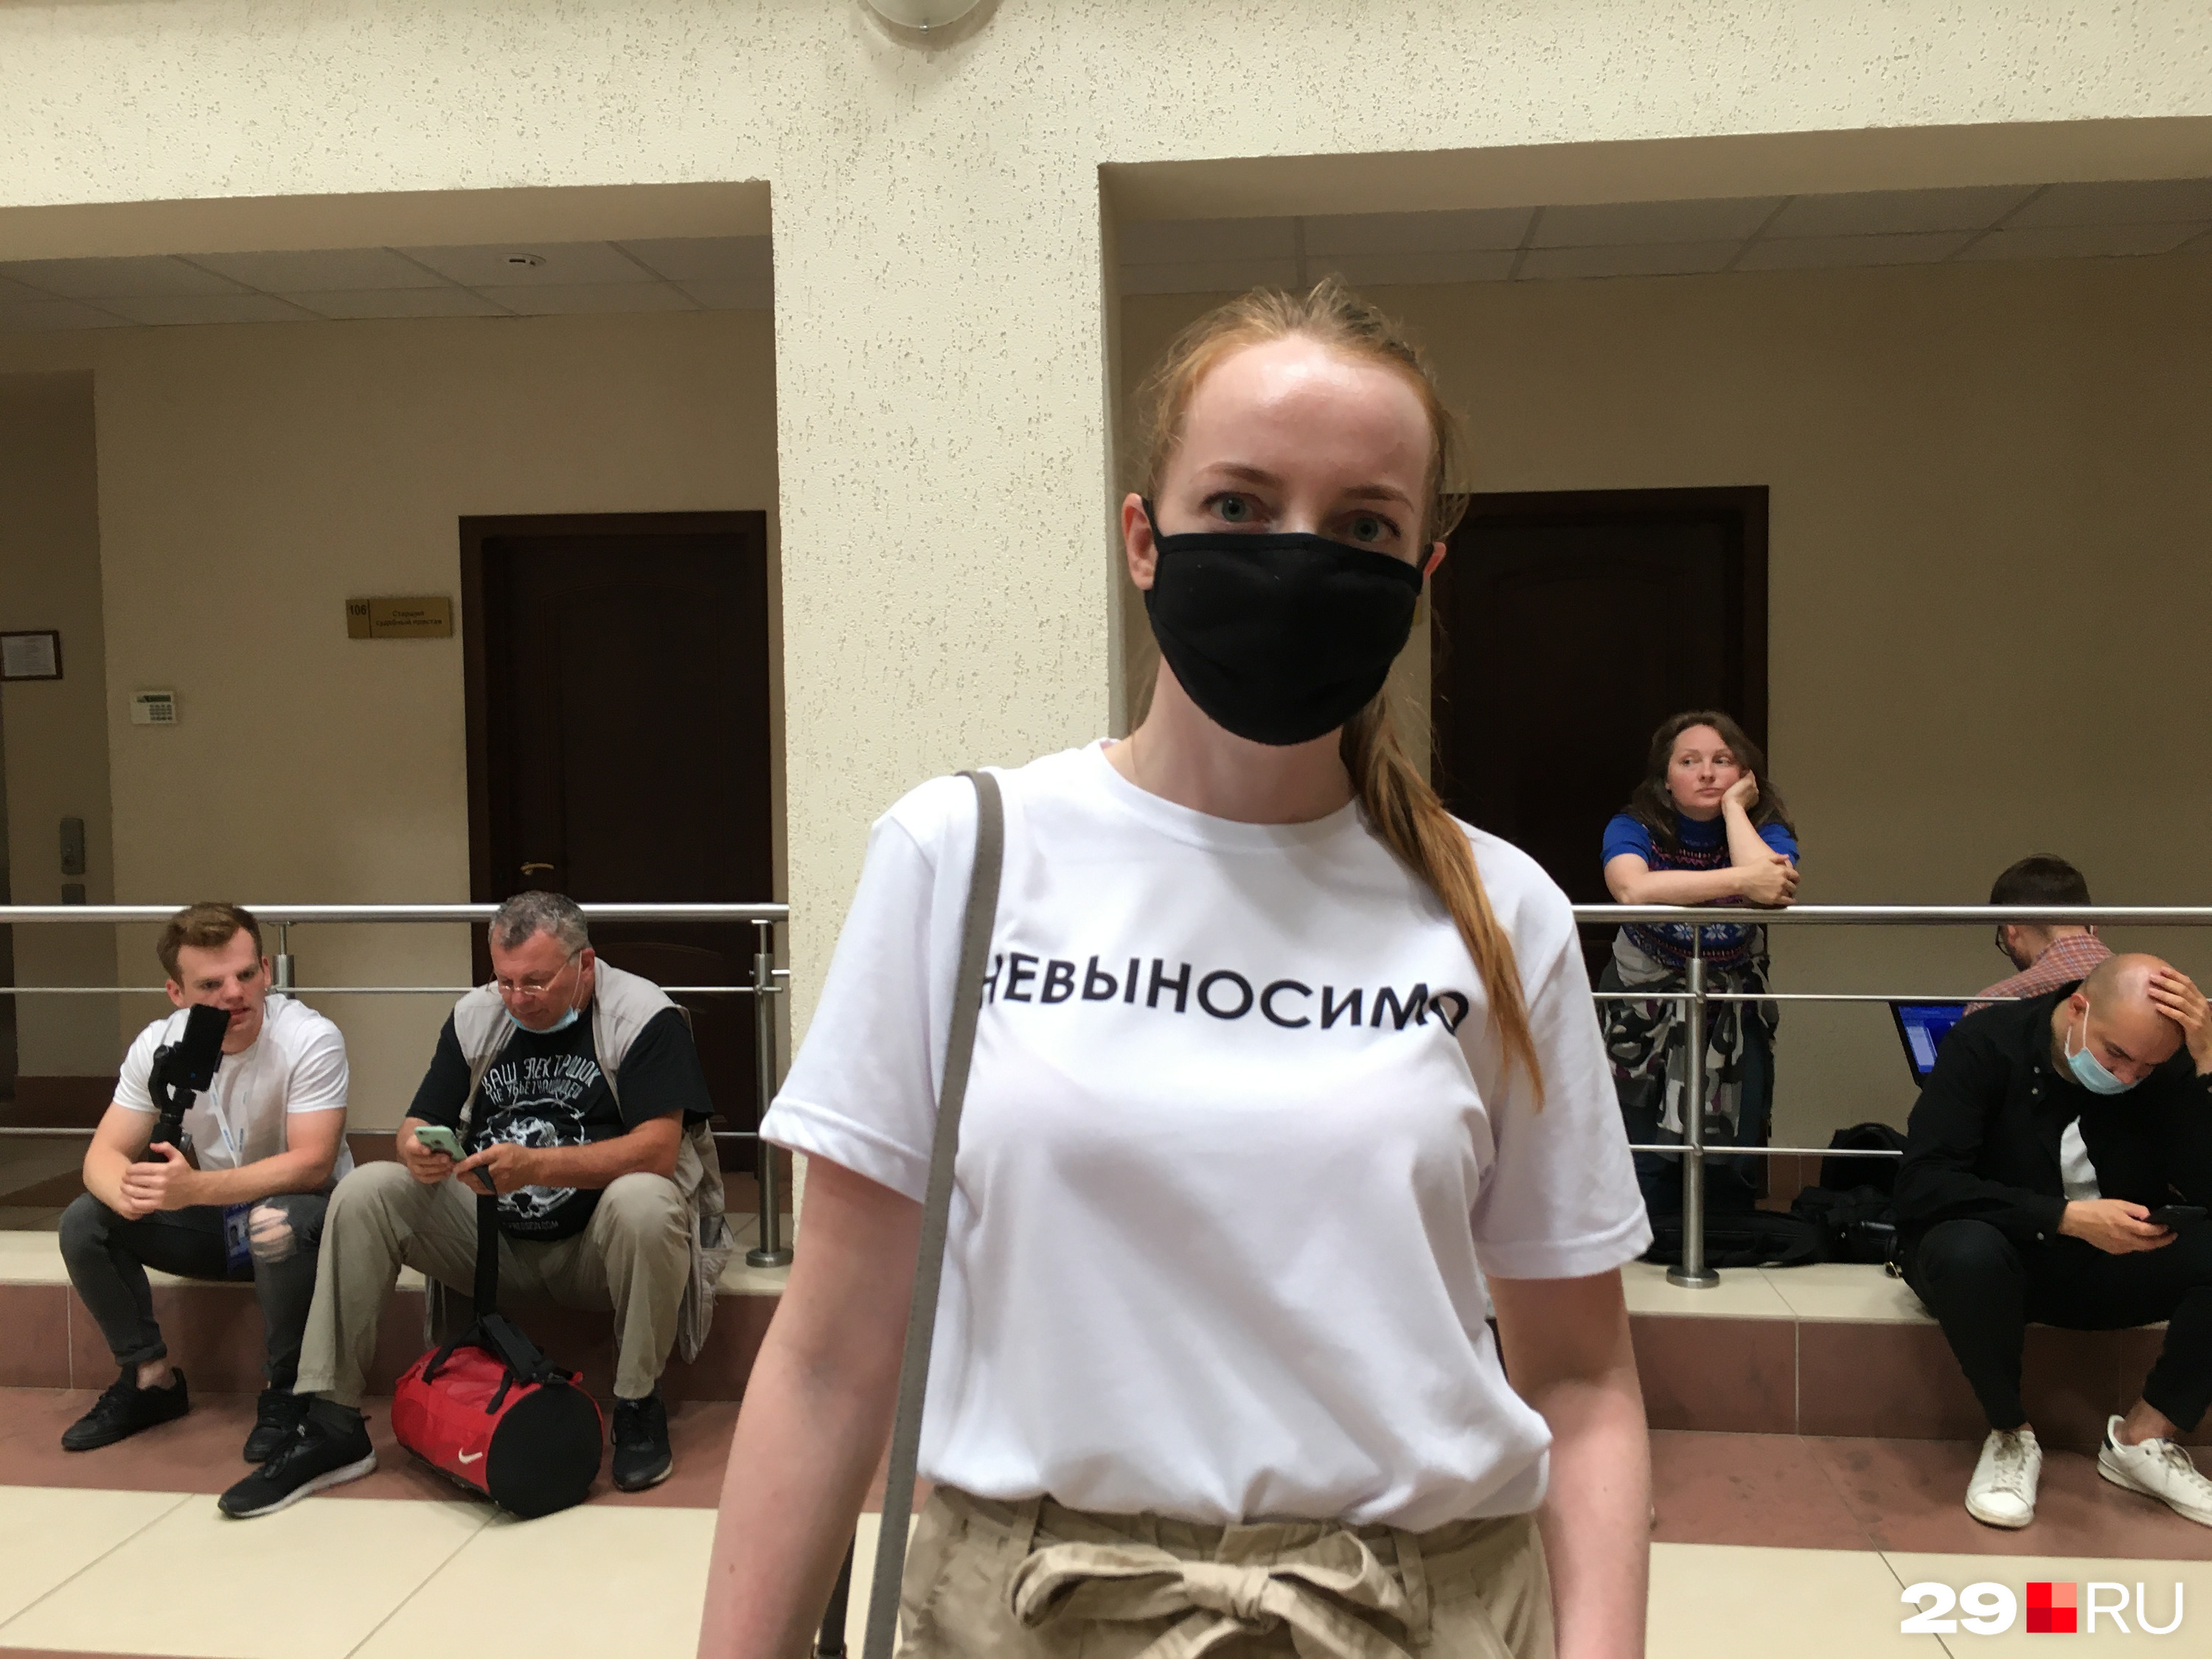 Псковская журналистка и правозащитница Алина Чернова специально напечатала футболку на сегодняшнее заседание